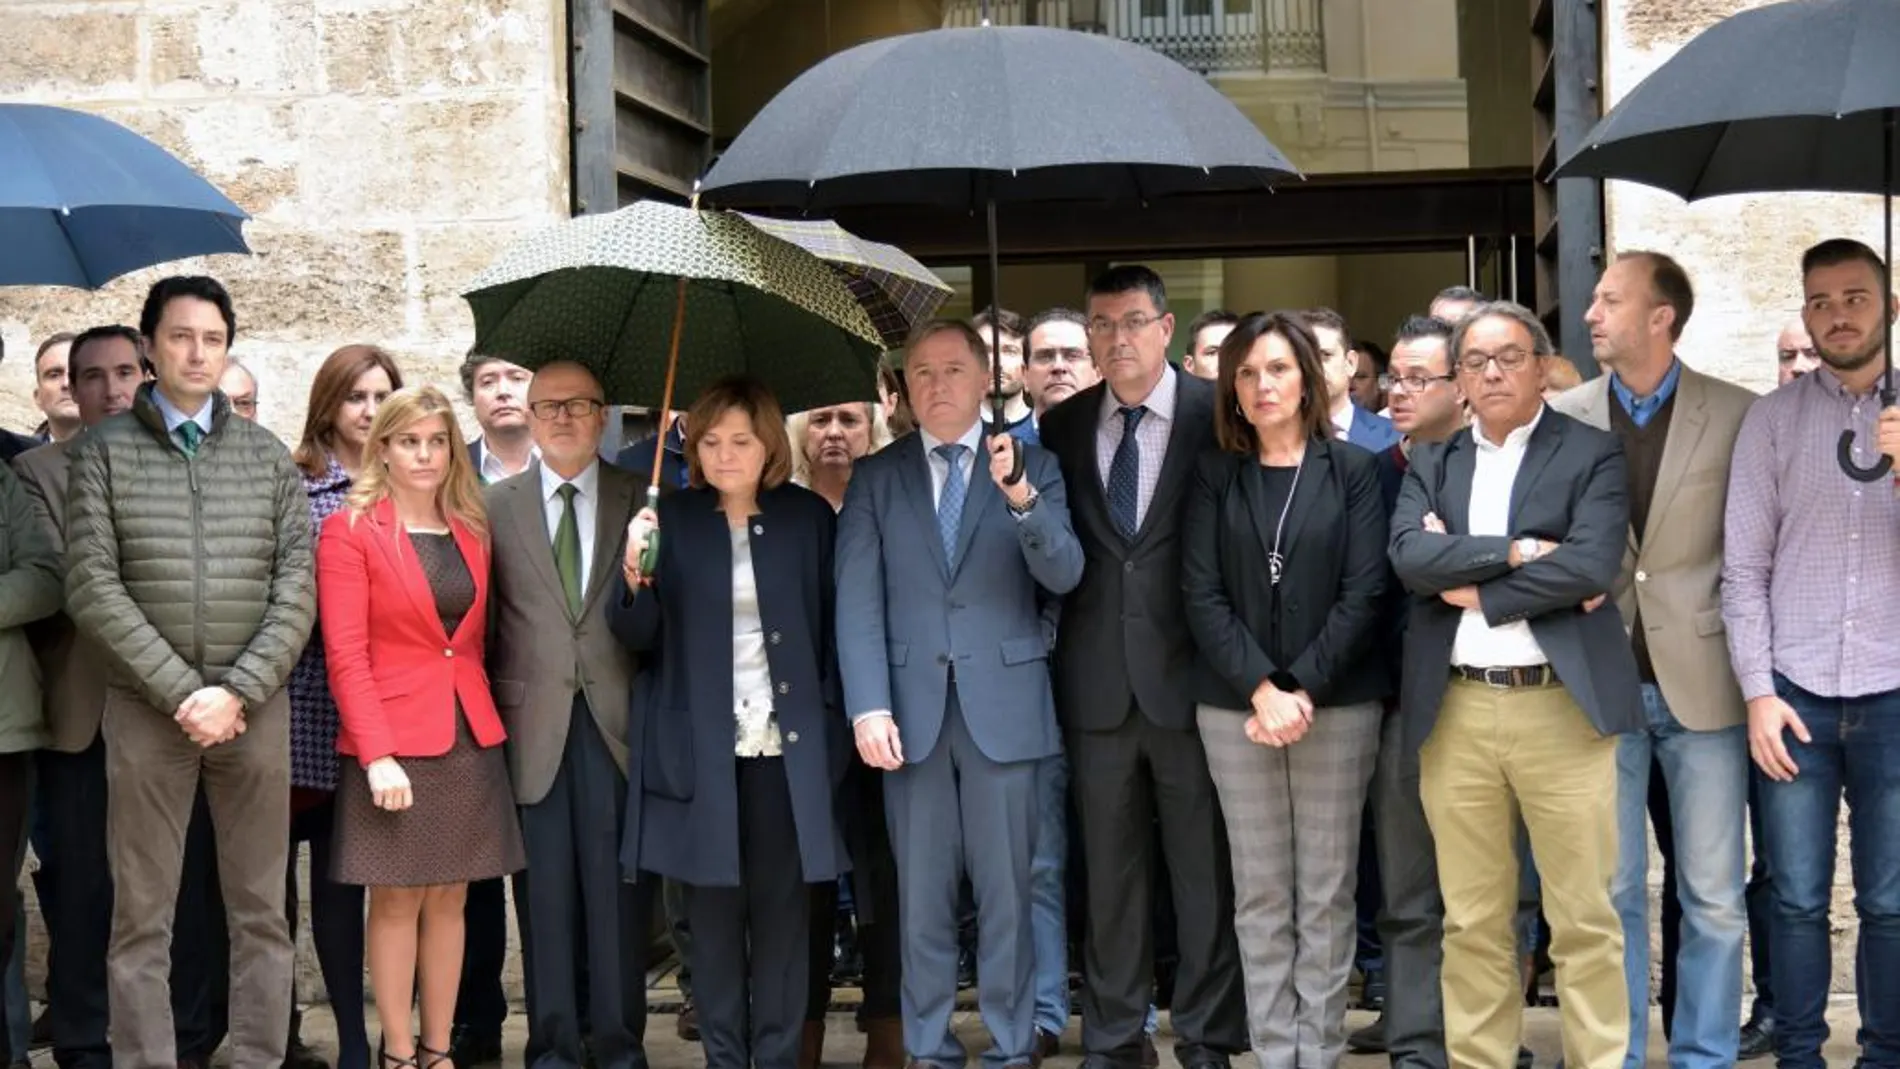 Les Corts guardan silencio. Representantes de todos los grupos parlamentarios guardaron bajo la lluvia un minuto de silencio por la que fue diputada autonómica durante treinta y dos años.